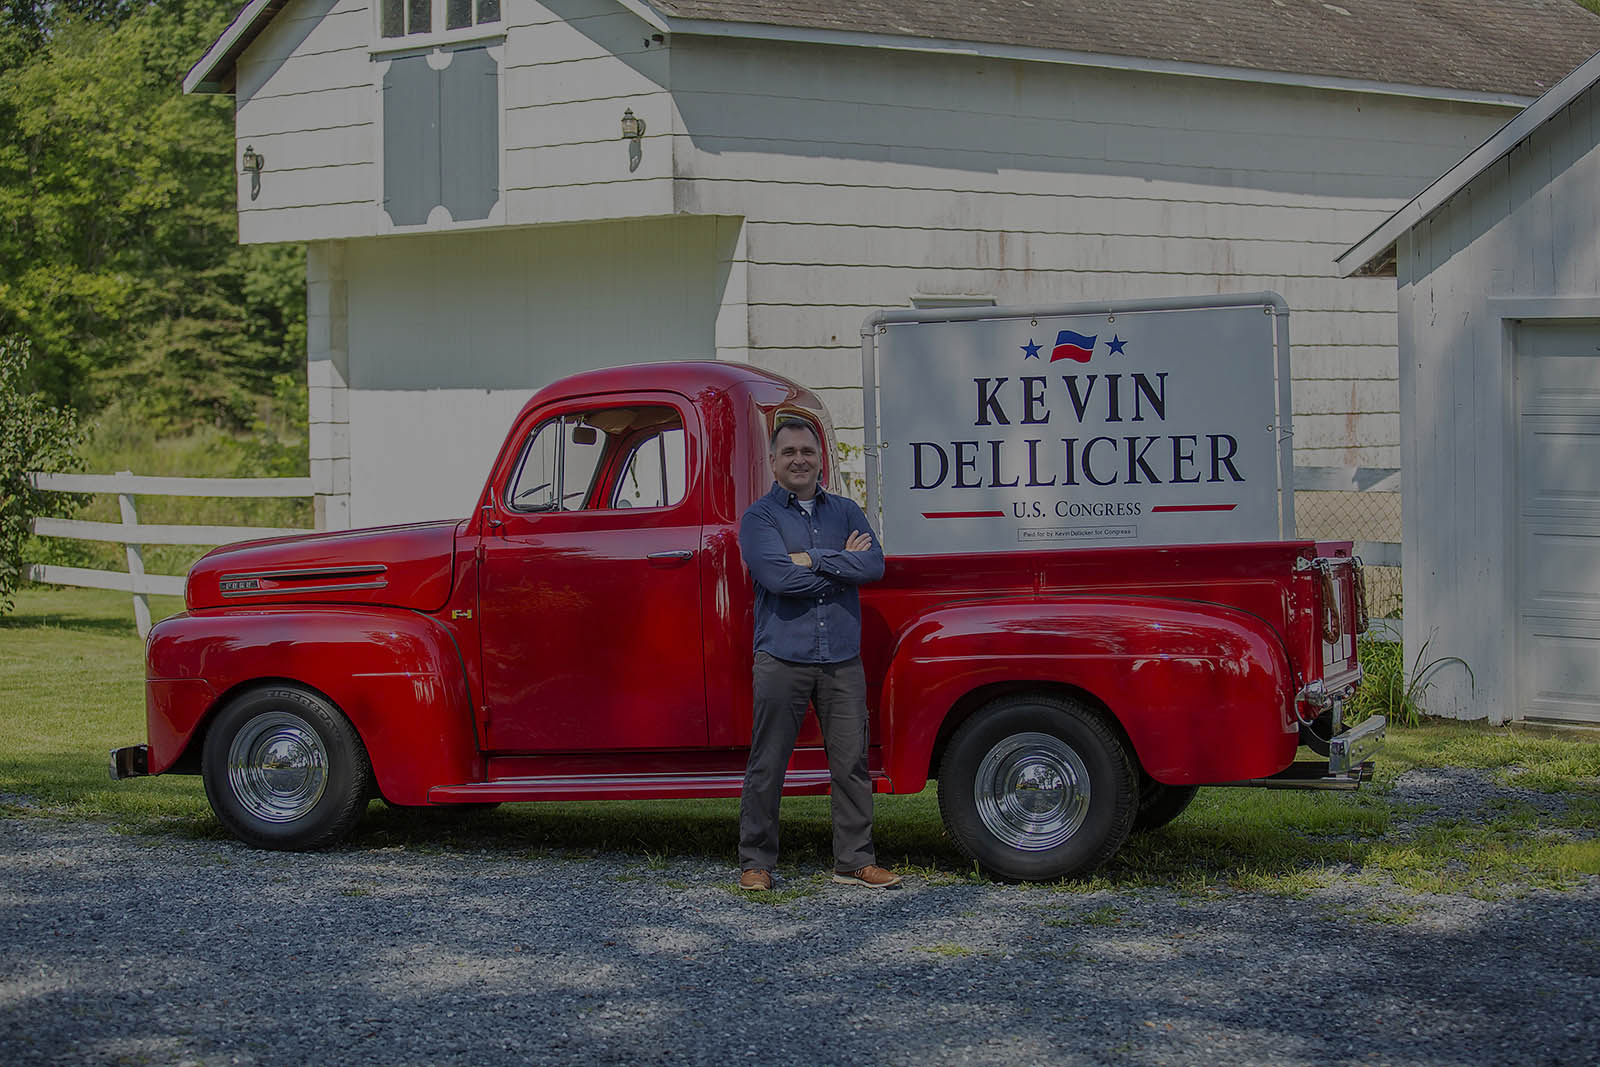 Kevin Dellicker